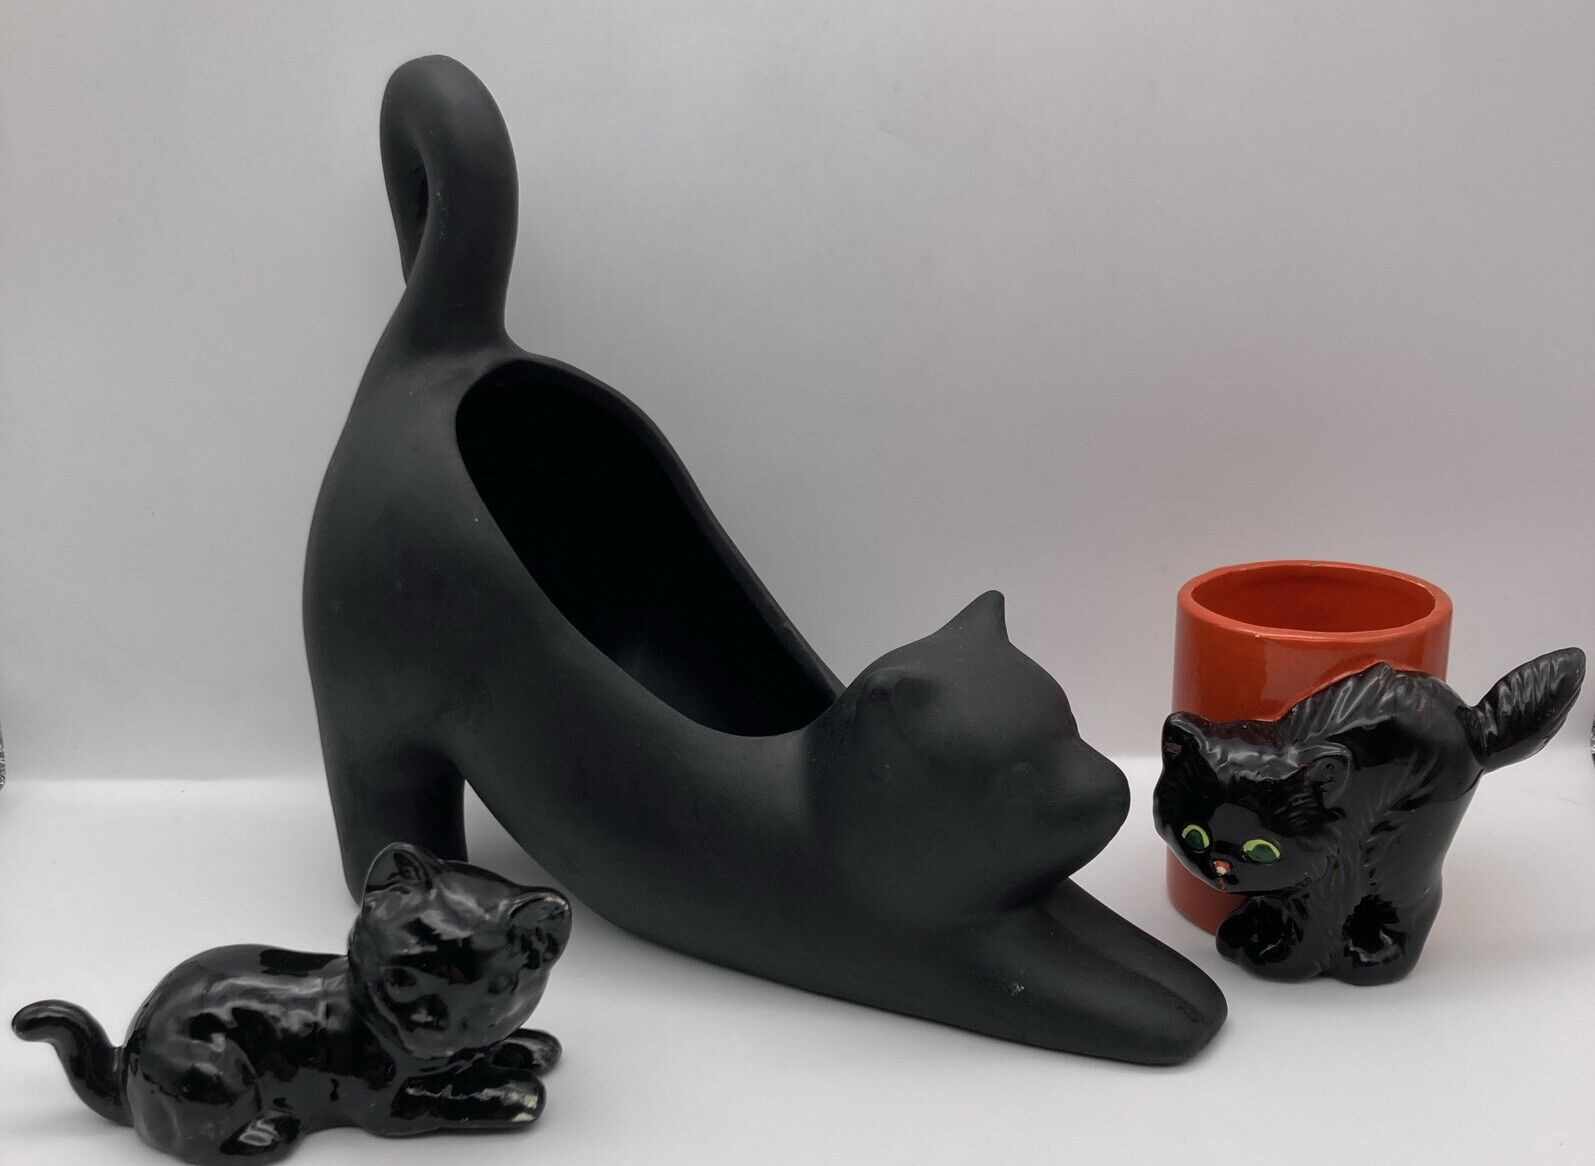 Lot Of 3 Black Cats Planter/Vase, Votive Holder, Figurine